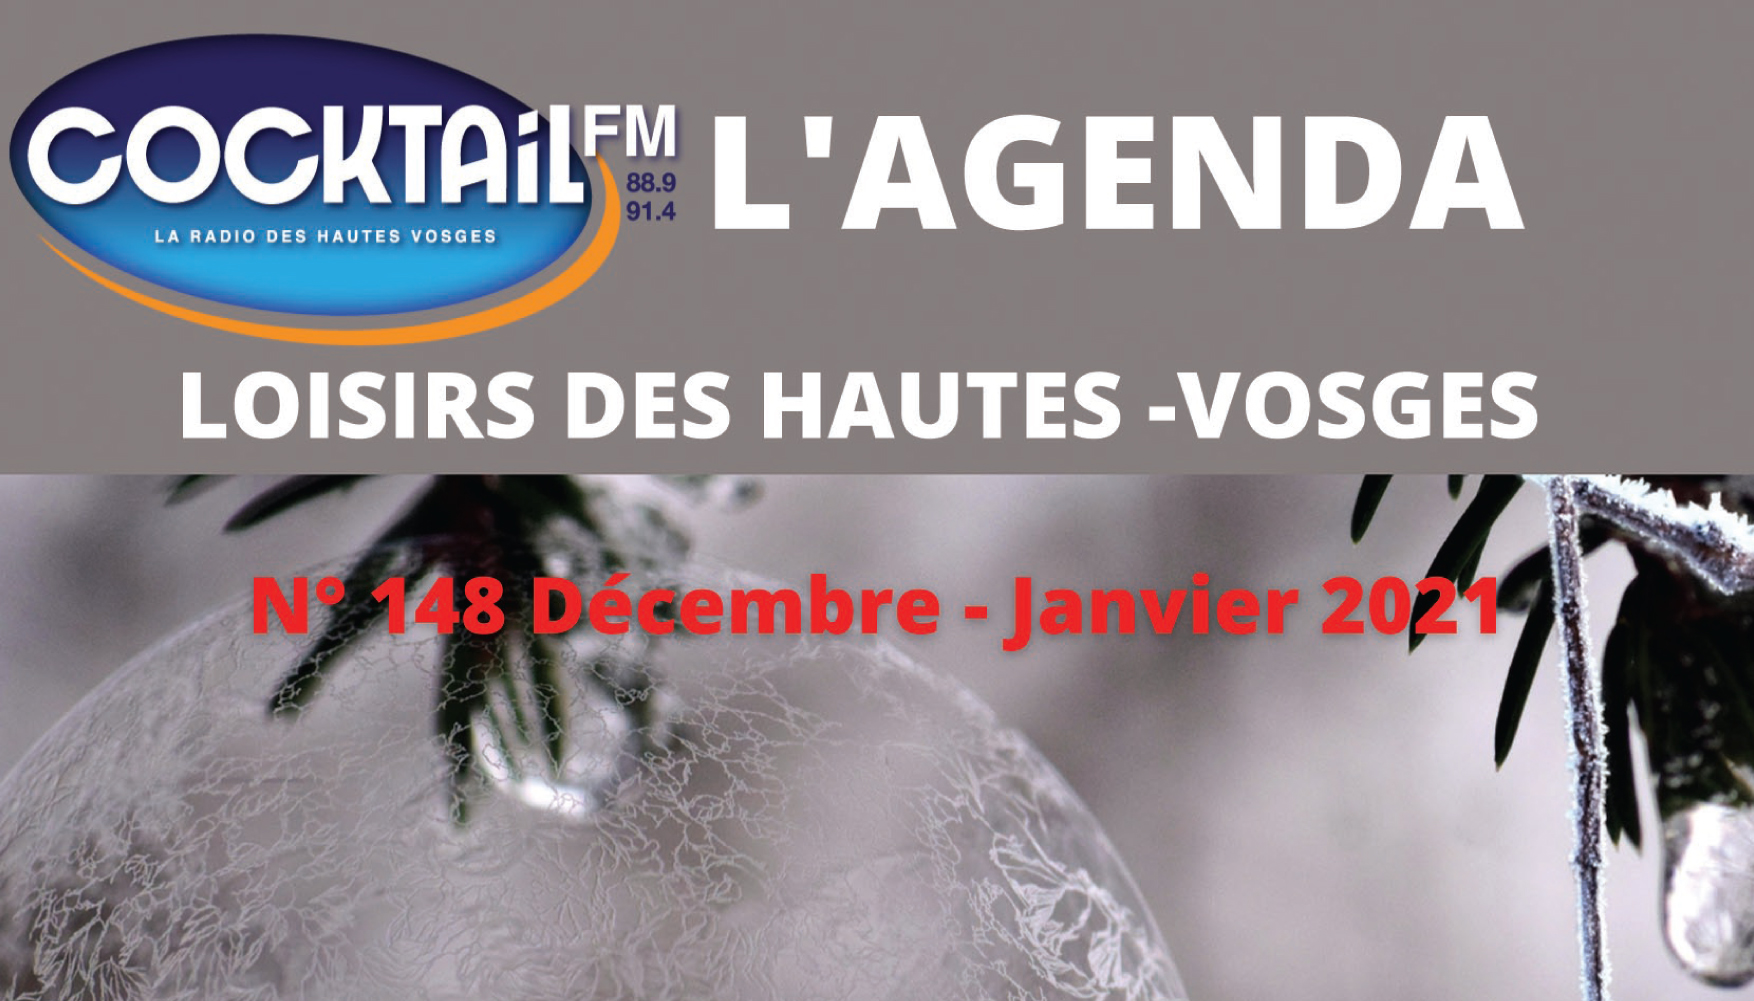 COCKTAIL FM L'AGENDA LOISIRS DES HAUTES VOSGES DEC 2020